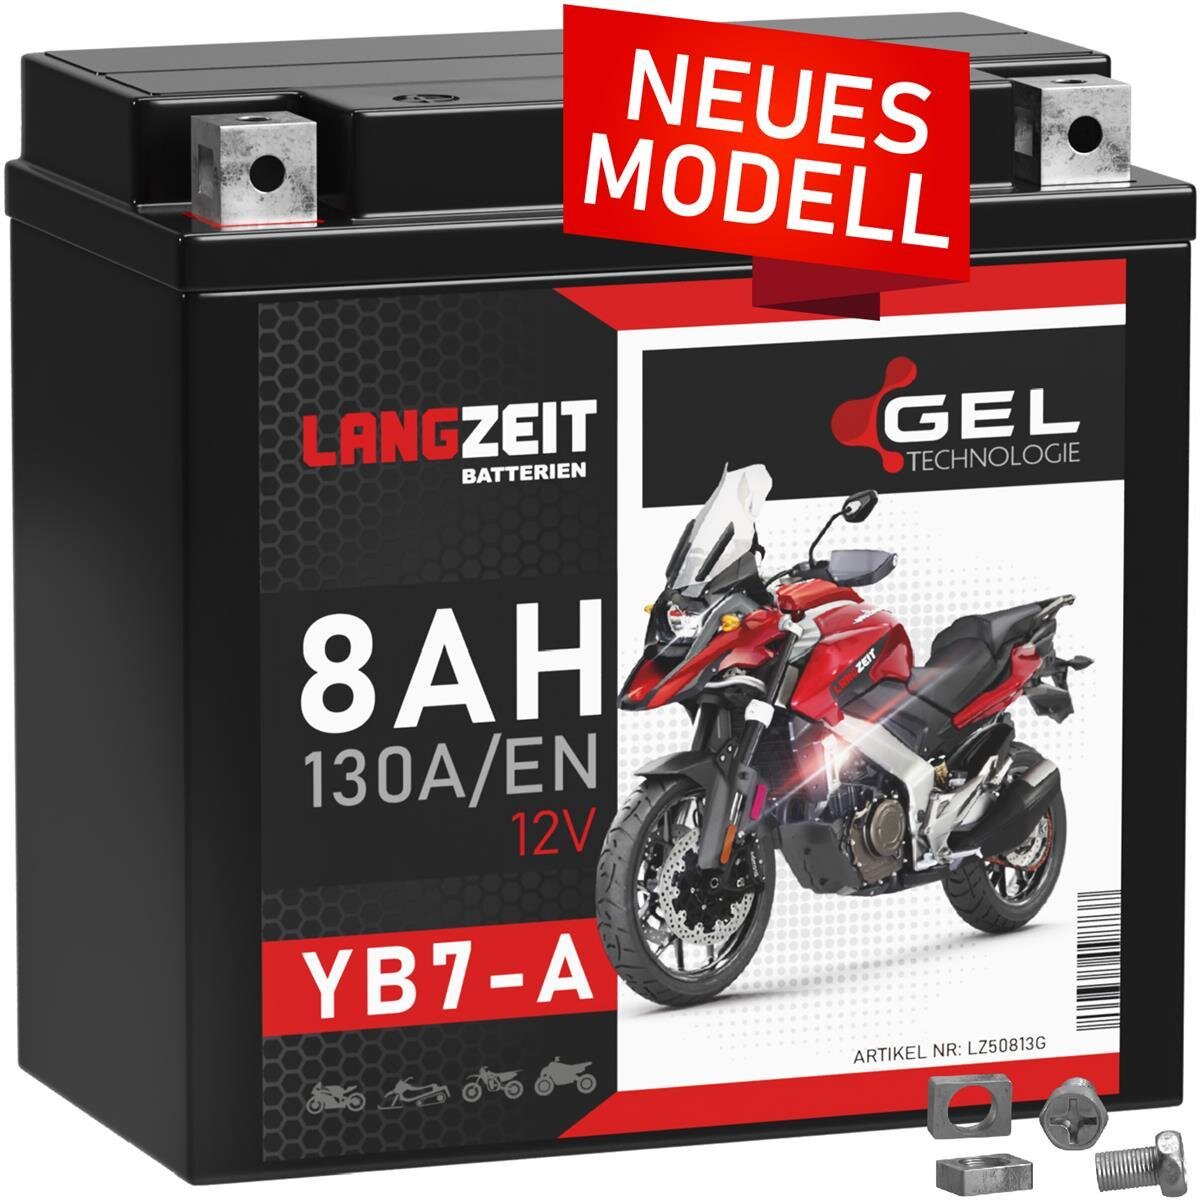 https://www.batteriescout.de/media/image/product/6139/lg/langzeit-gel-motorradbatterie-yb7-a-8ah-12v.jpg